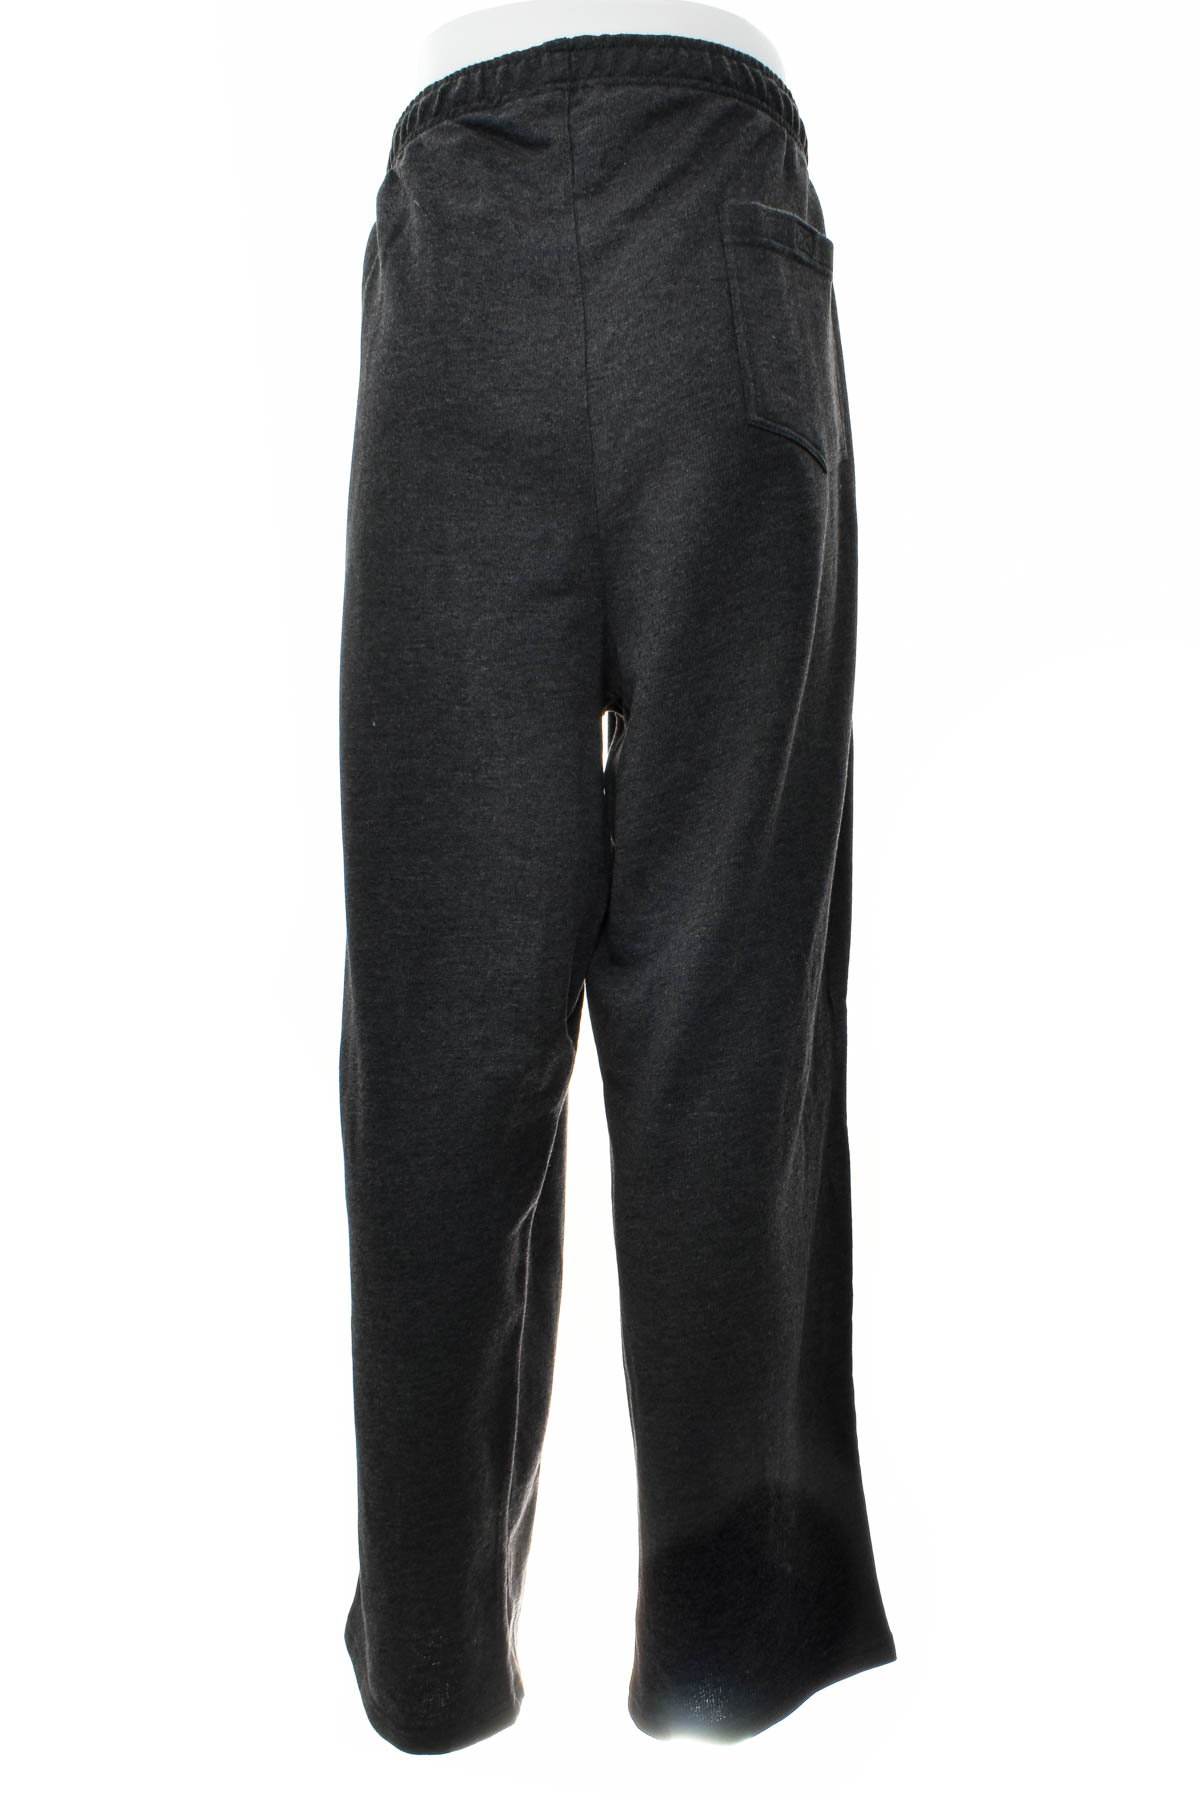 Pantalon pentru bărbați - JANVANDERSTORM - 1